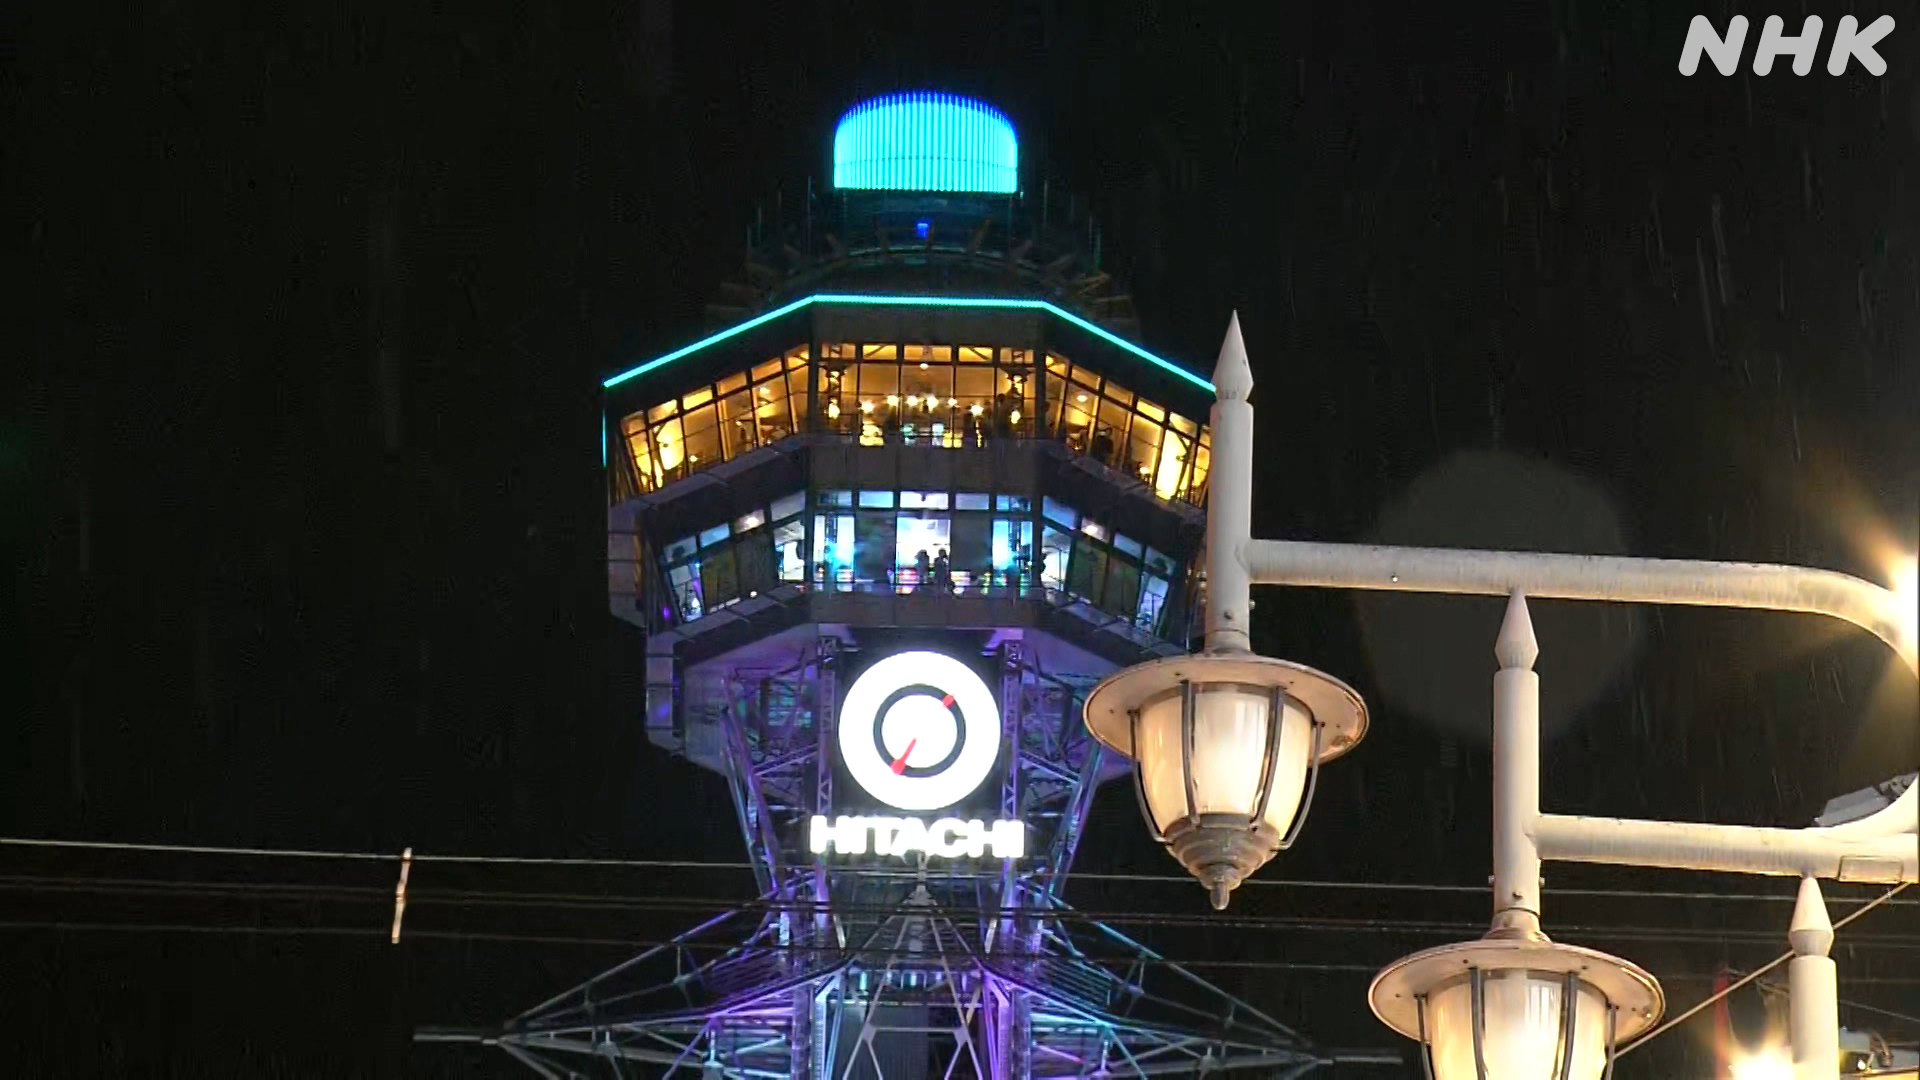 大阪のシンボル「通天閣」屋外看板リニューアル 約1年ぶり点灯